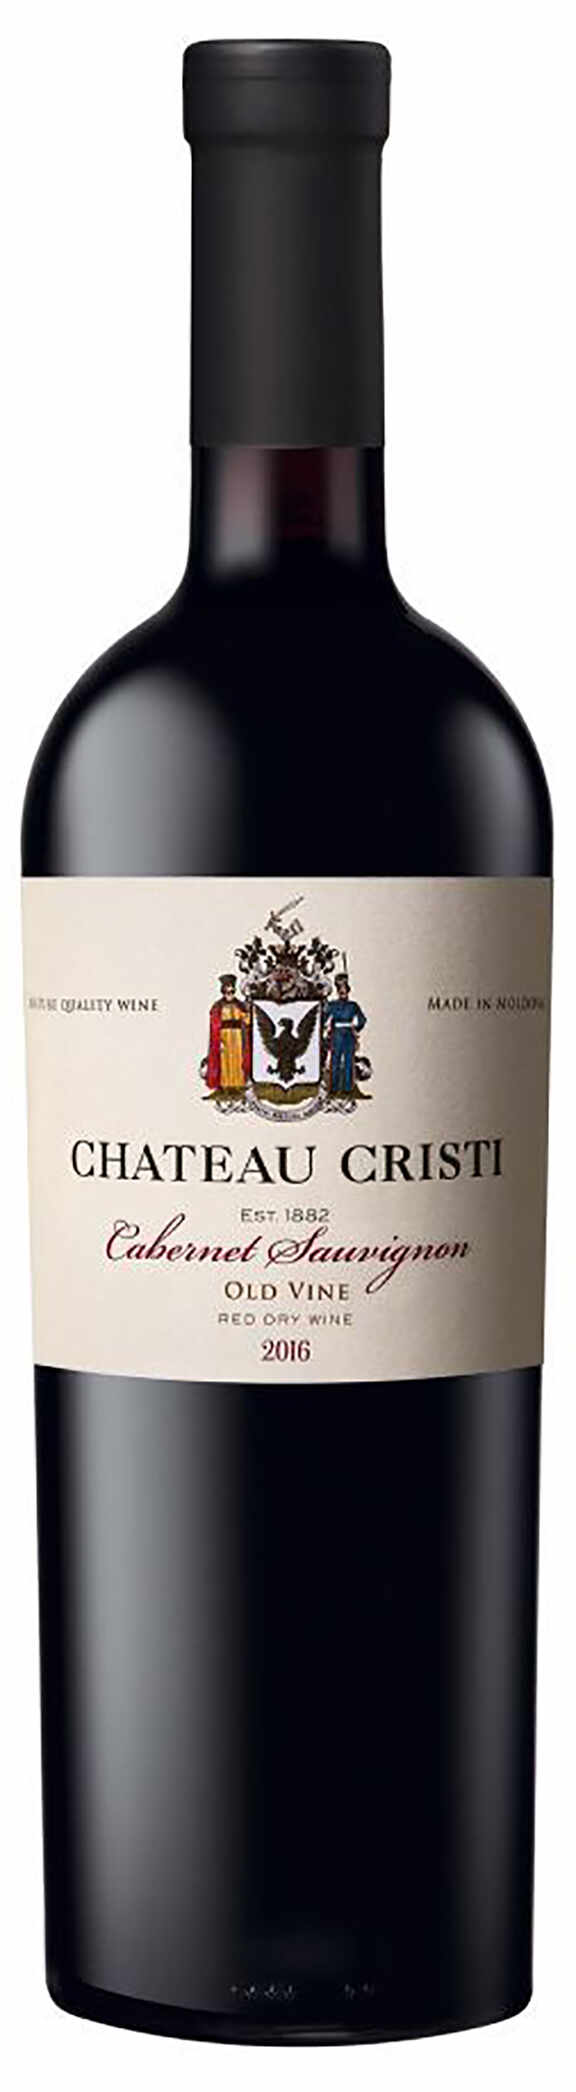 Vin rosu - Chateau Cristi, Cabernet Sauvignon, Old Vine, sec, 2016 | Chateau Cristi